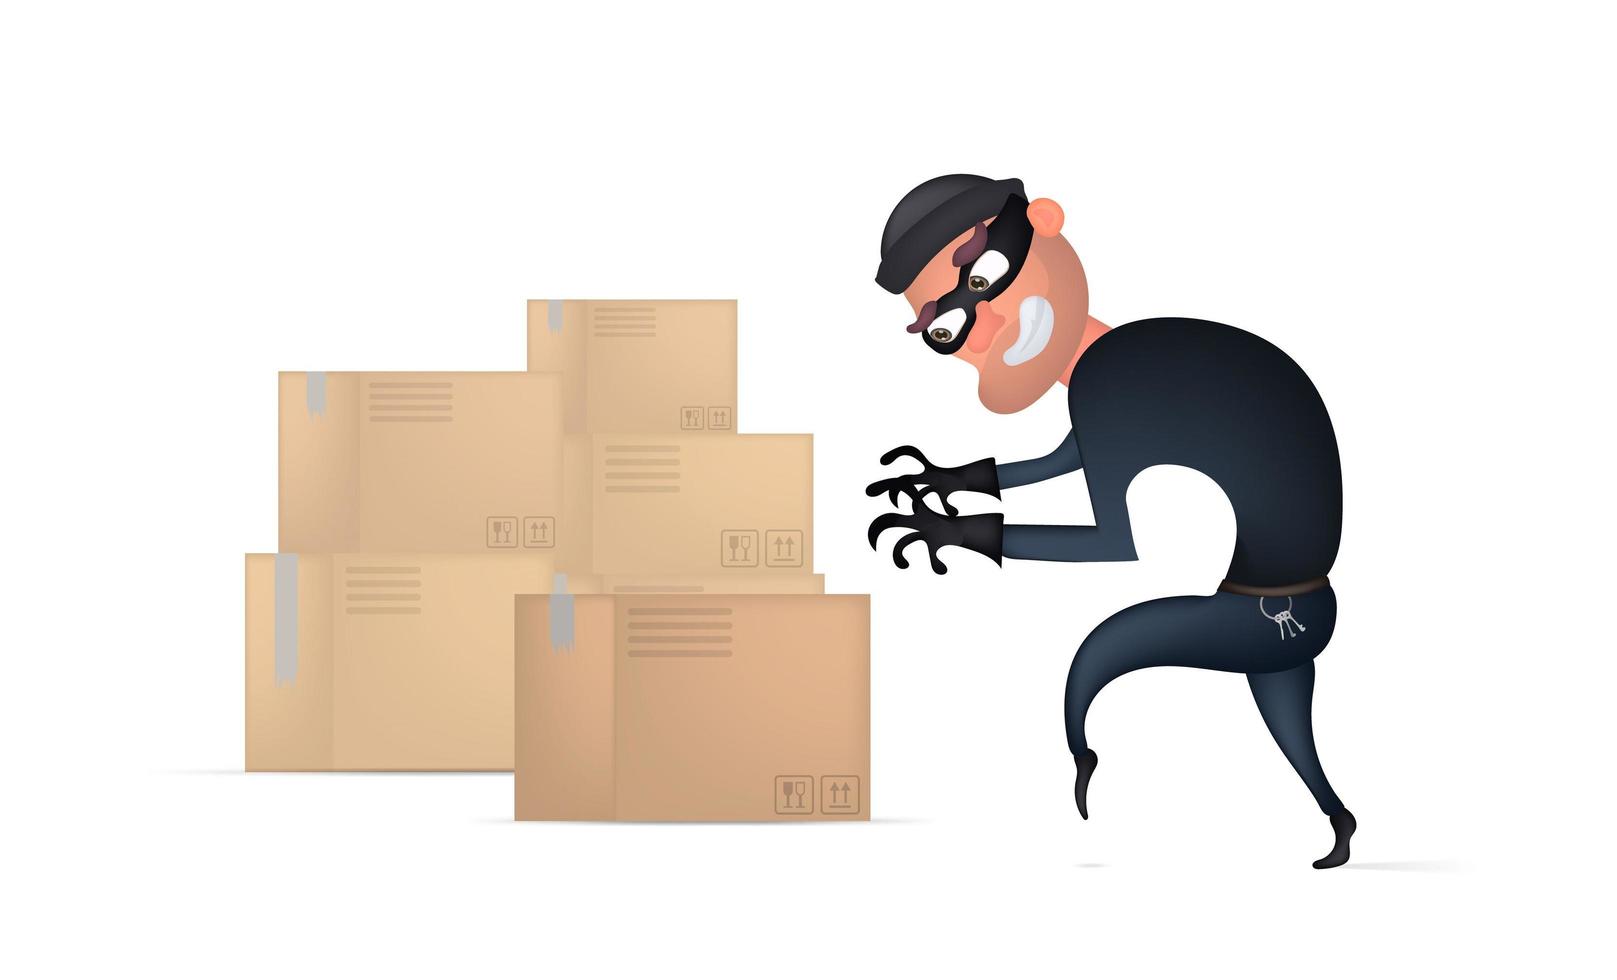 Diebarbeiter stiehlt Pakete im Postamt. maskierter Mann im schwarzen Anzug stahl Karton. Cartoon-Stil im flachen Design. Vektor-Illustration, isoliert. vektor